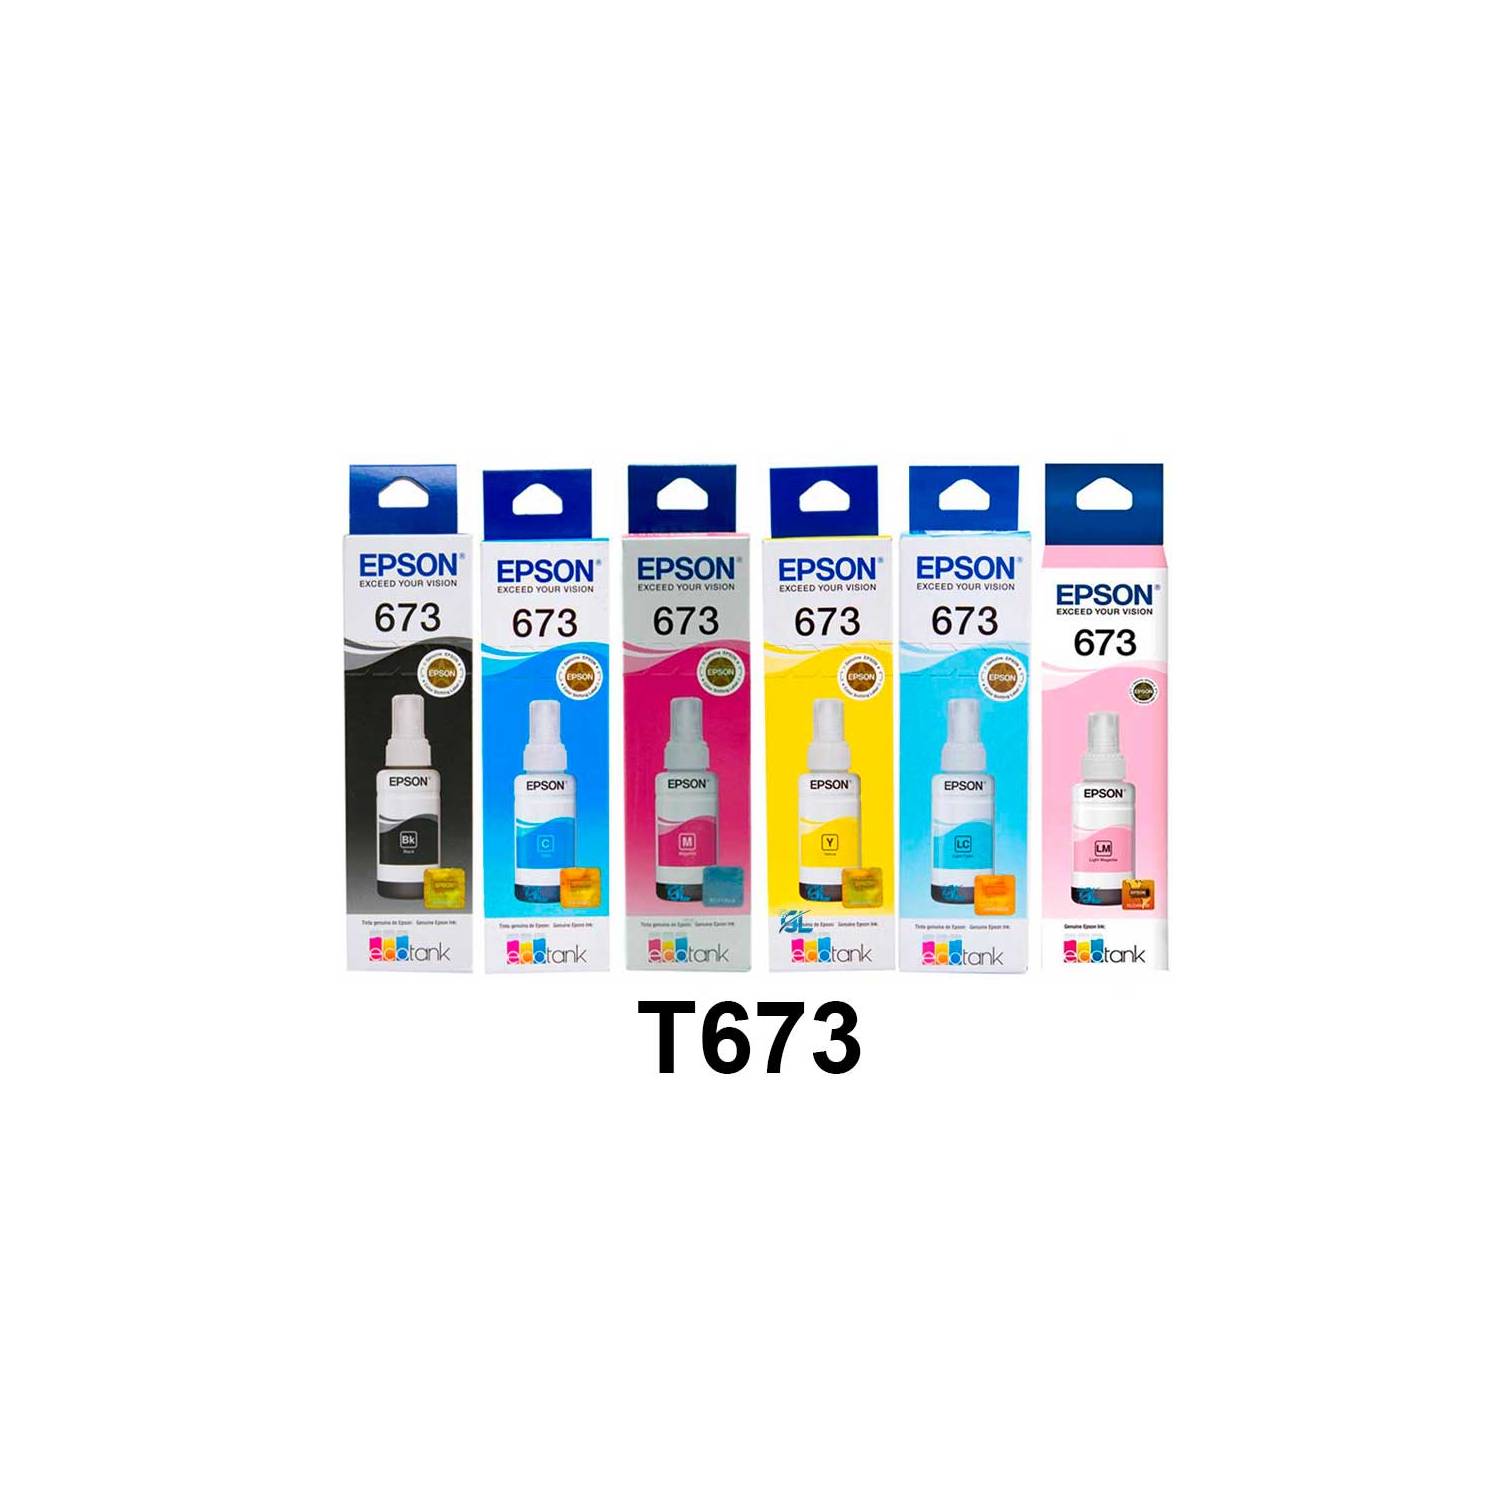 EPSON T673 Juego de tinta de recarga de 6 colores para L800 / L1800 (Epson  original) Fabricante: Epson